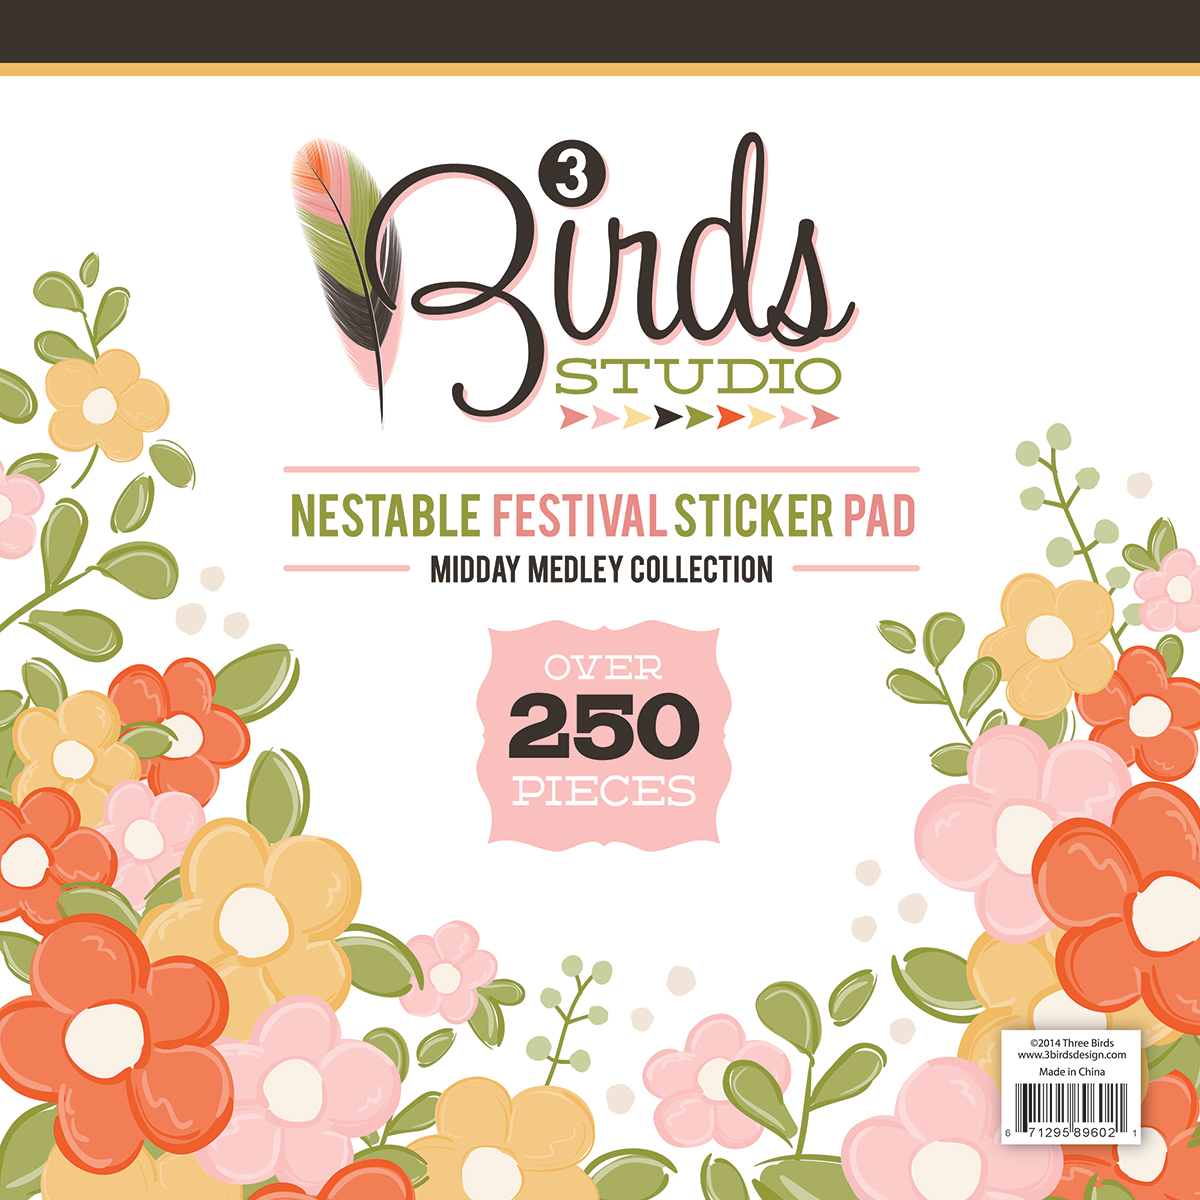 3 Birds Studio Midday Medley Nestable Festival Sticker Pad #3birdsdesign #middaymedley